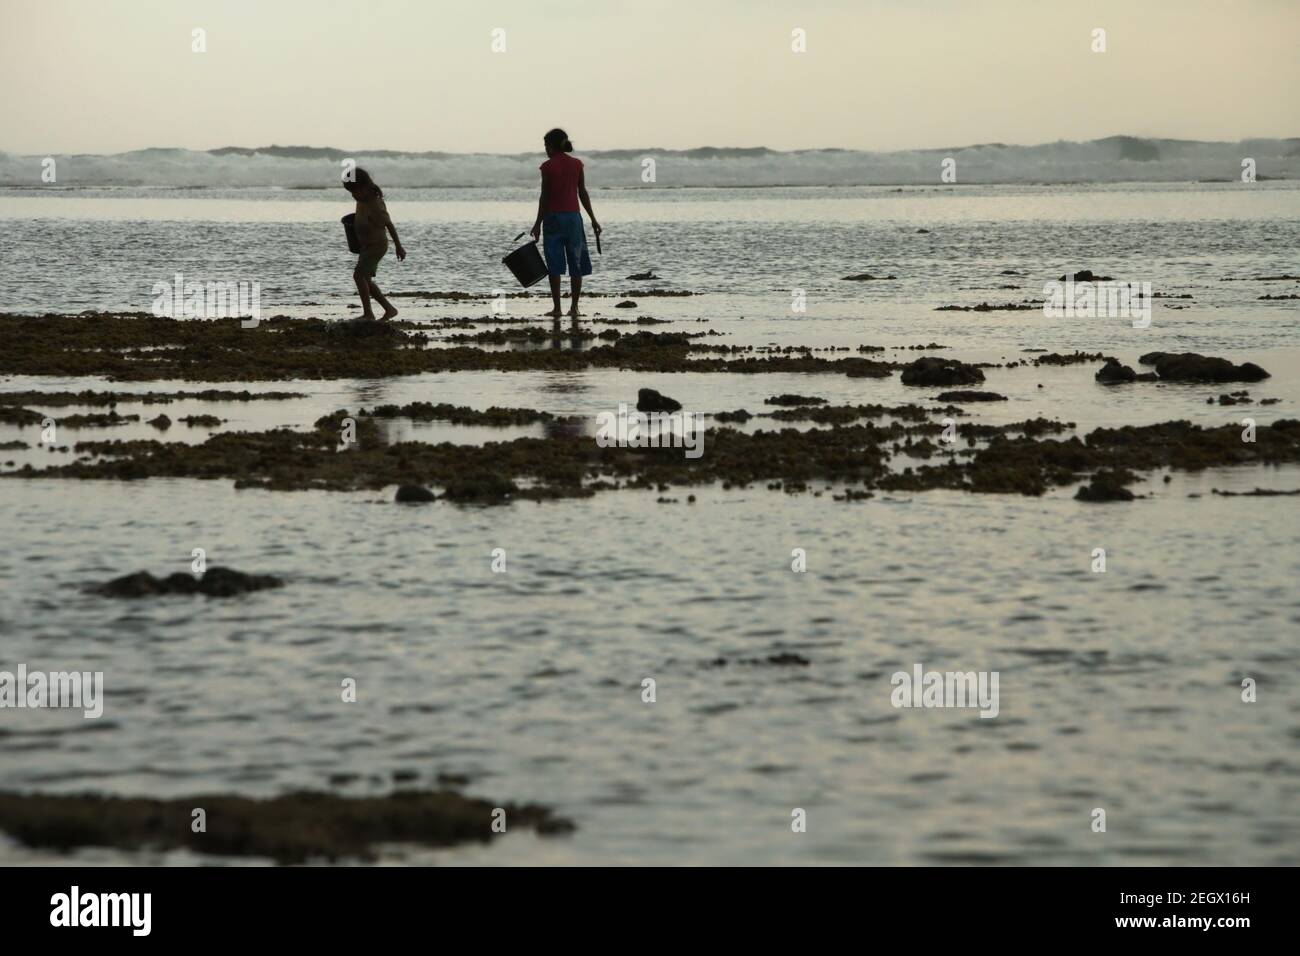 Una giovane donna e un bambino si sono insilati mentre camminano sulla spiaggia rocciosa durante la bassa marea, trasportando secchi di plastica per raccogliere i prodotti marini. Foto Stock